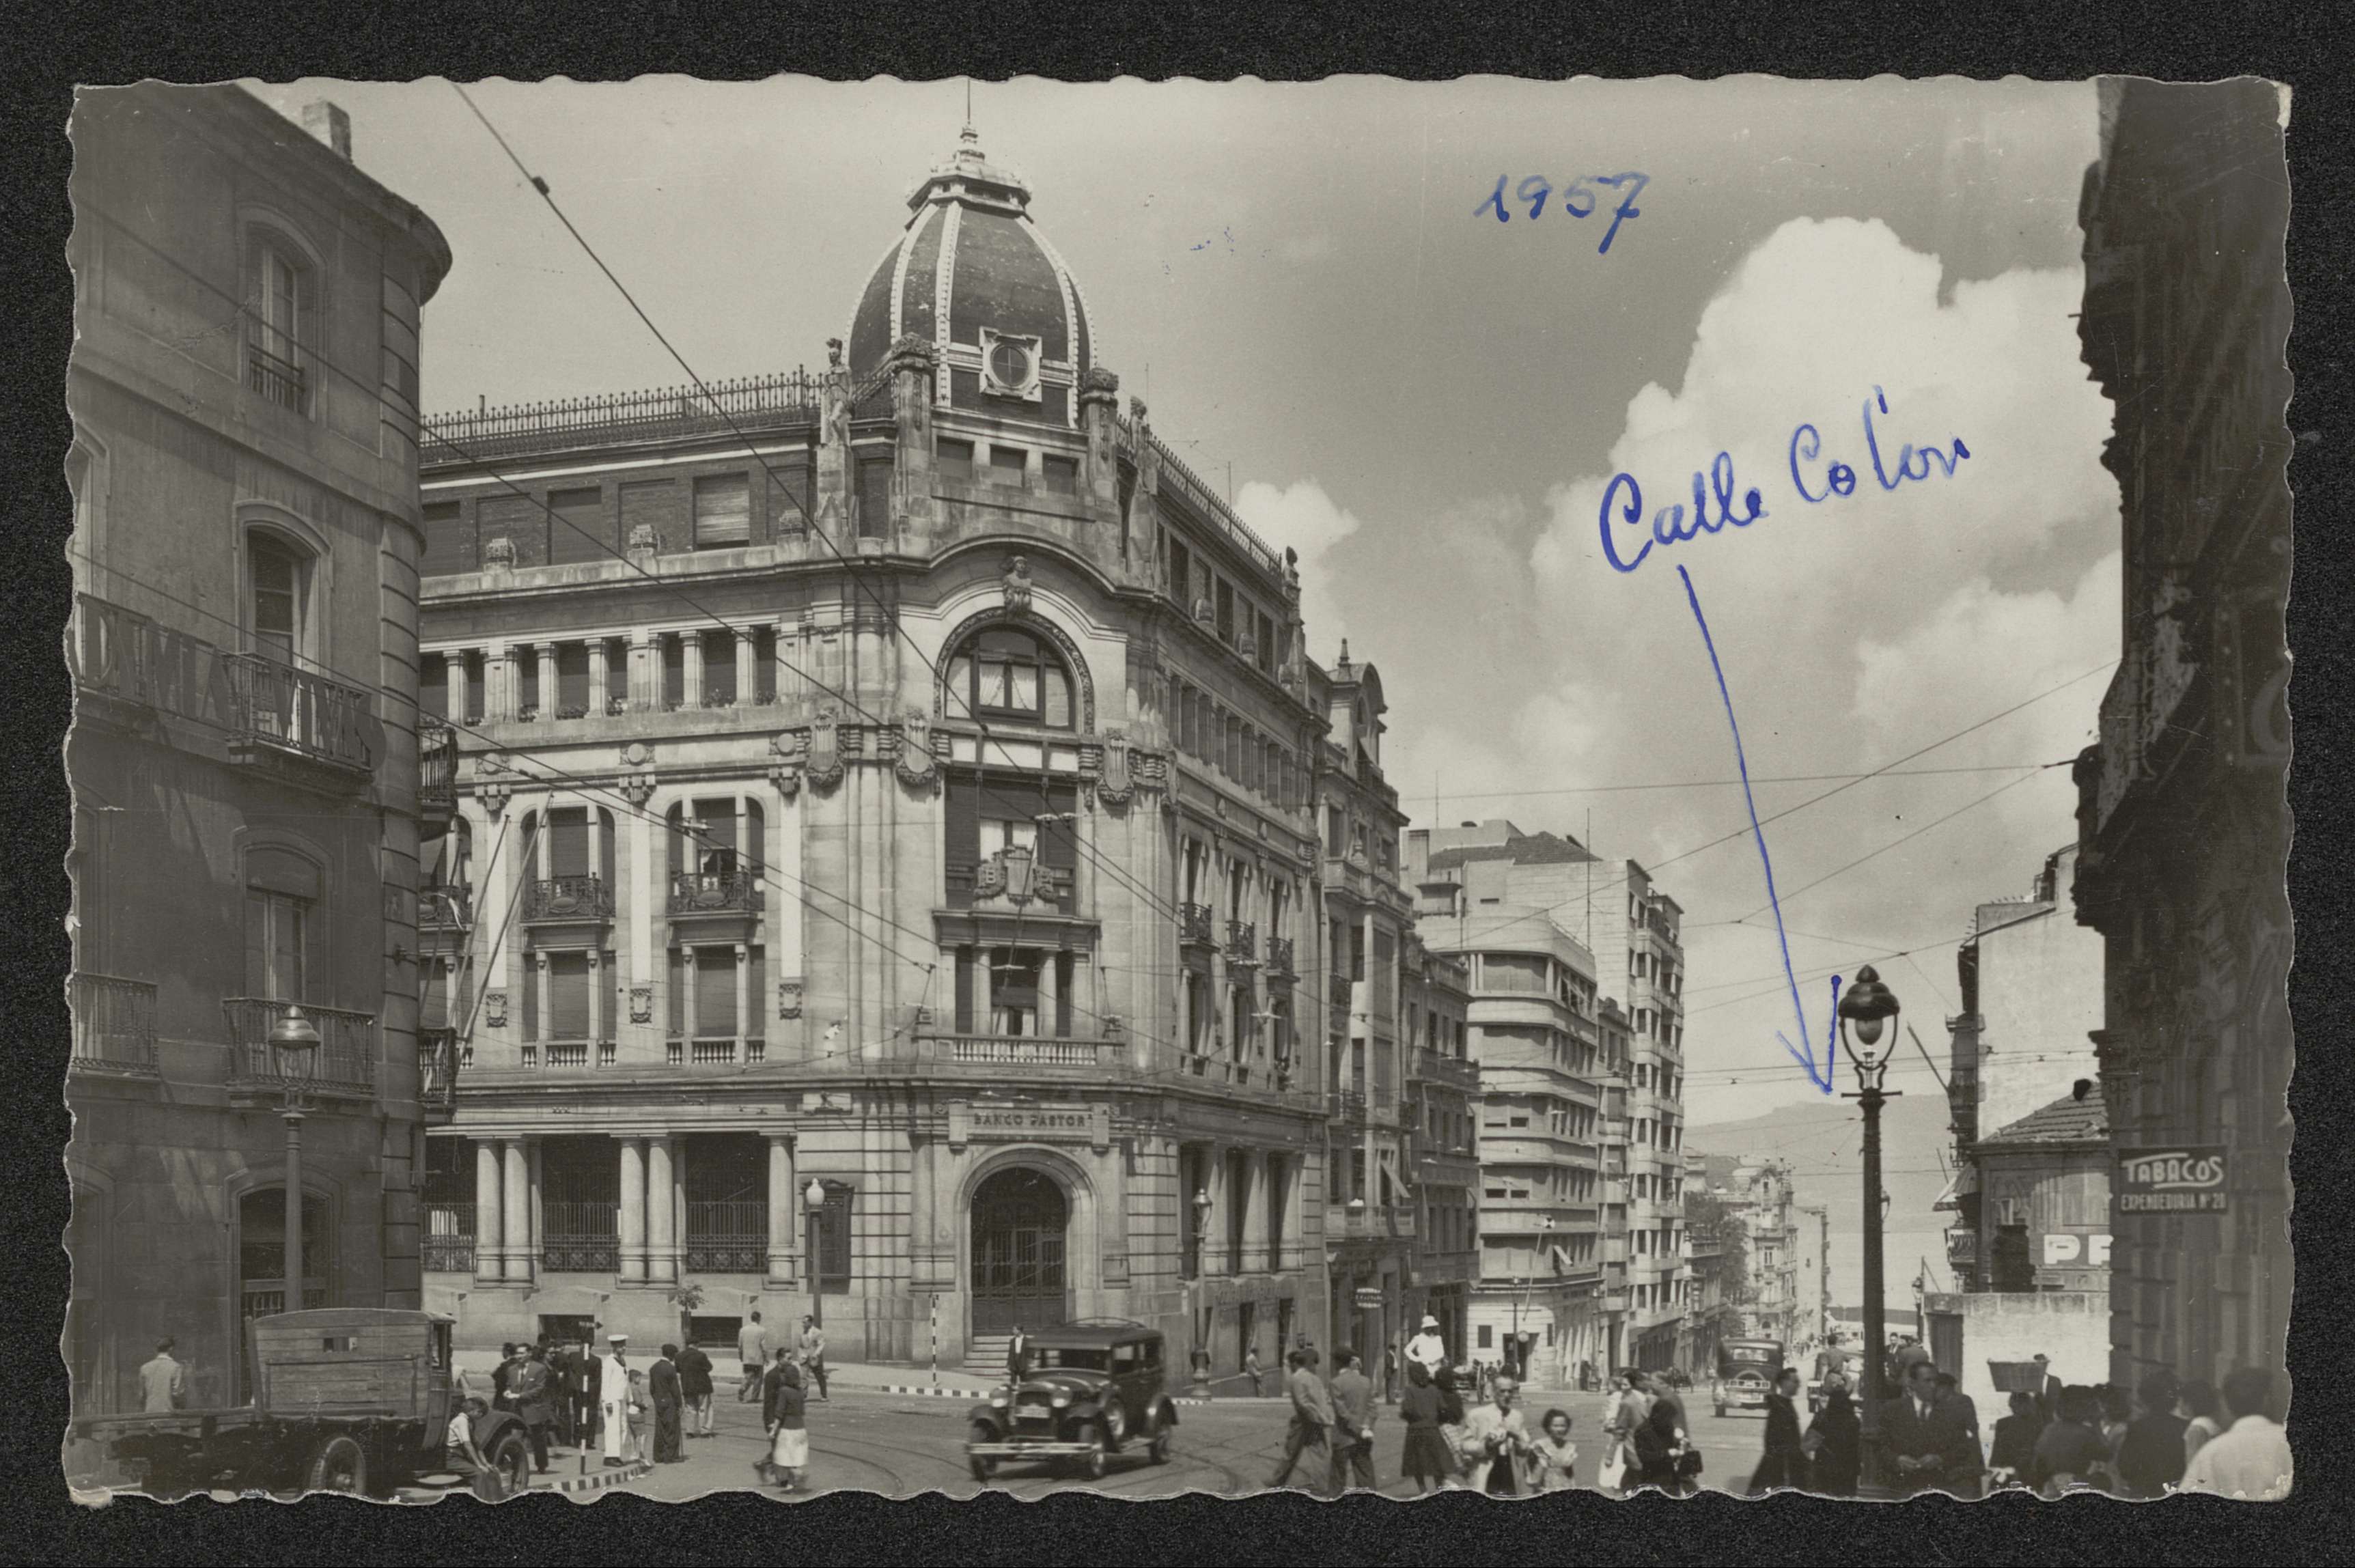 Vigo: Banco Pastor y calle Colón, 1957